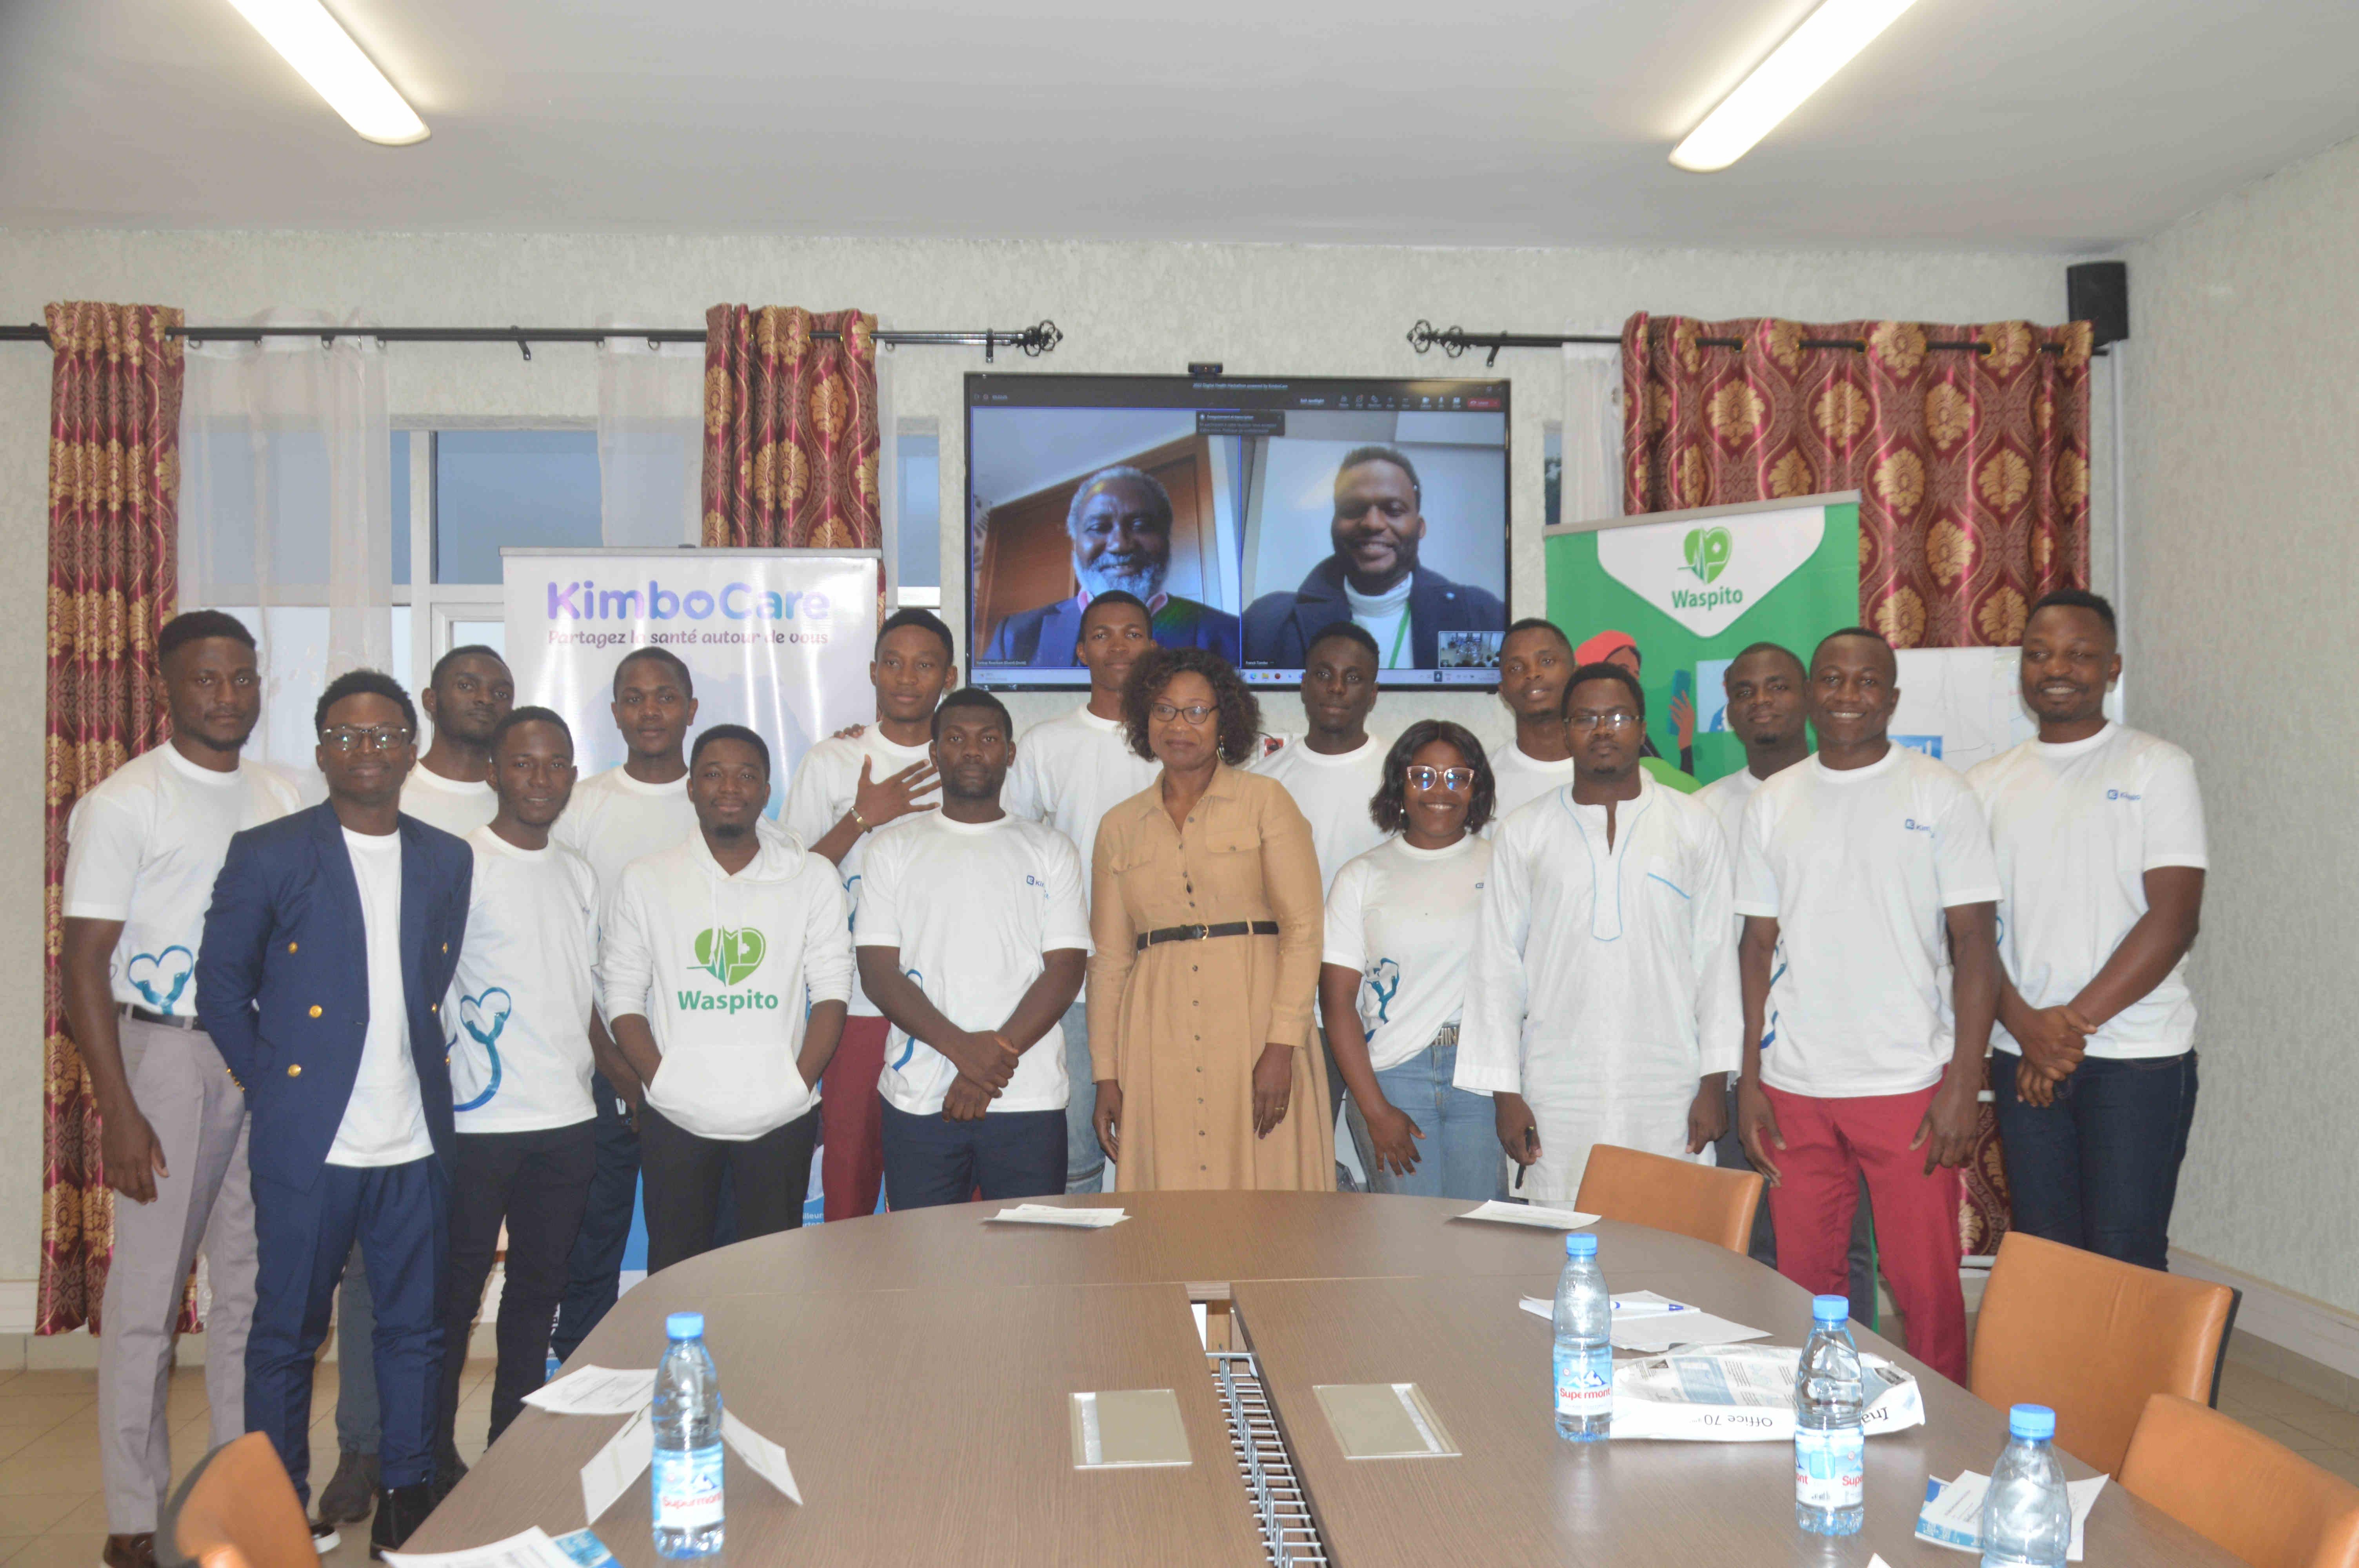 La première compétition en santé numérique a été organisée au Cameroun